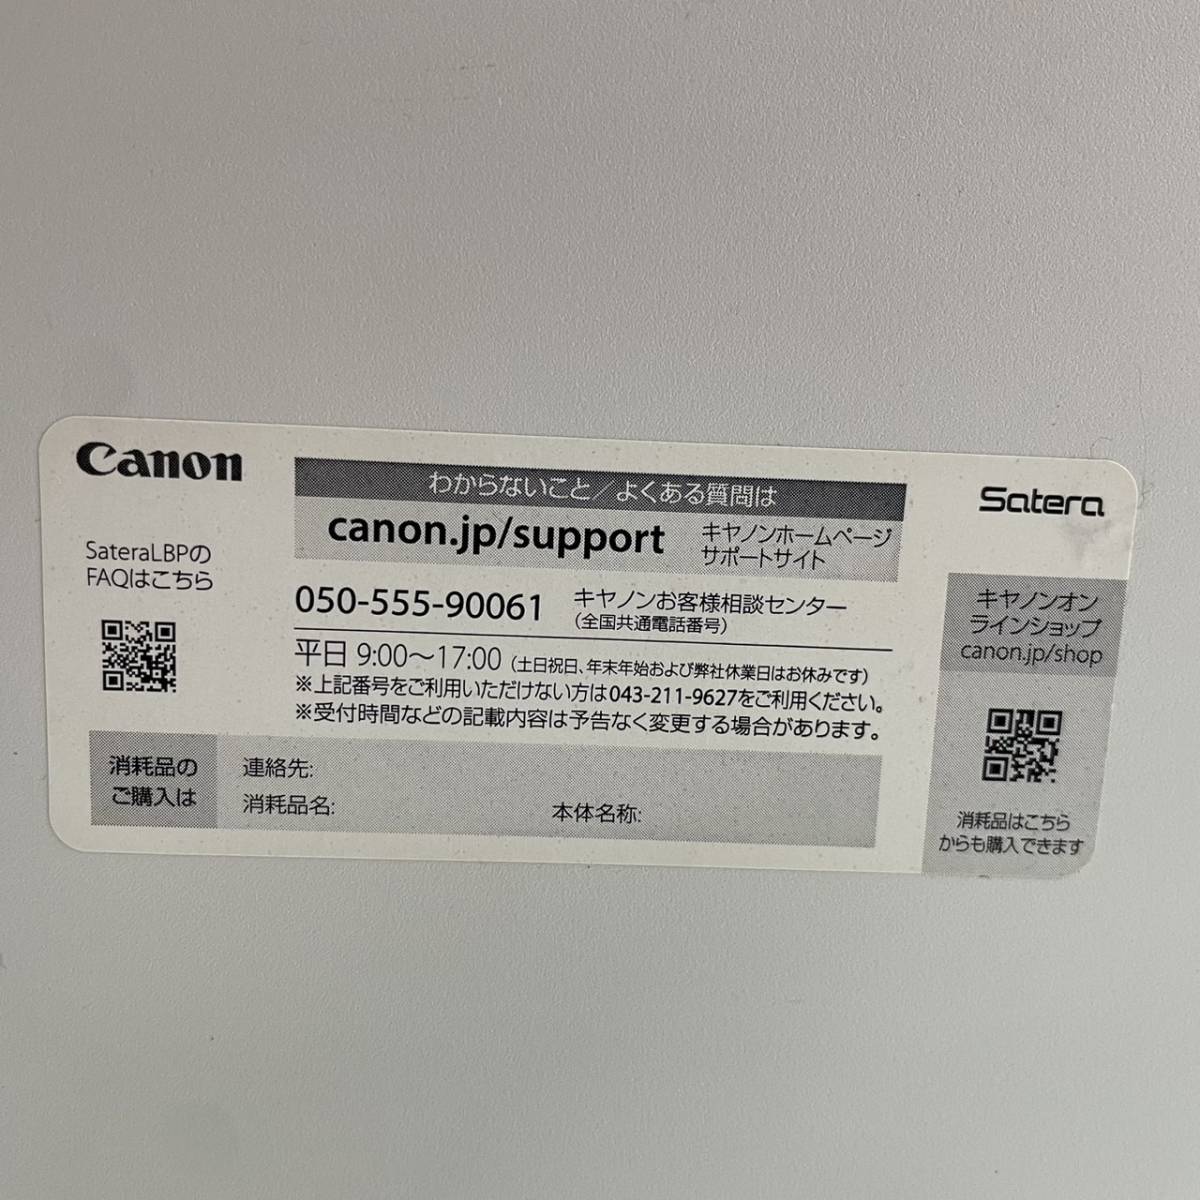 Canon キャノン A4 モノクロレーザープリンター Satera LBP6040 コンパクト 無線LAN対応 未使用トナー付き_画像5